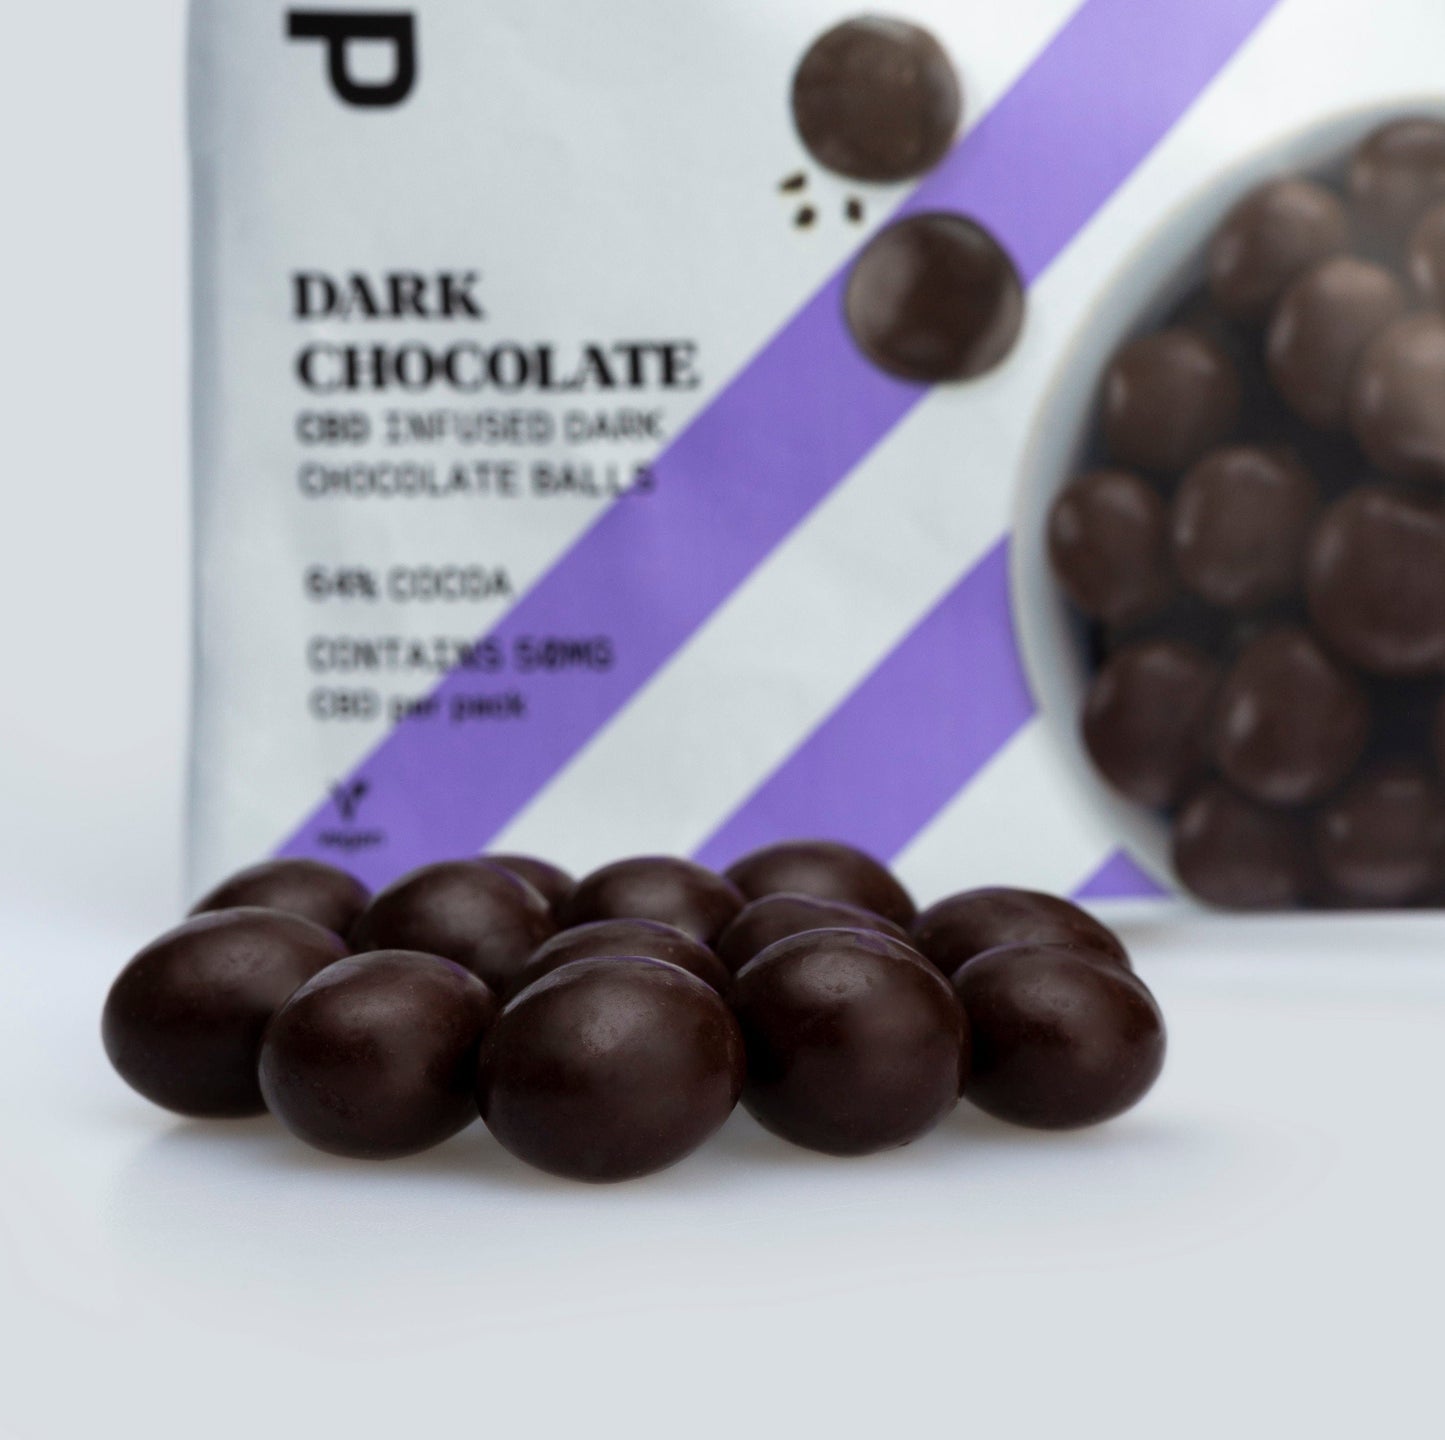 CBD Chocolate Balls 50mg - 64% Cocoa Solids